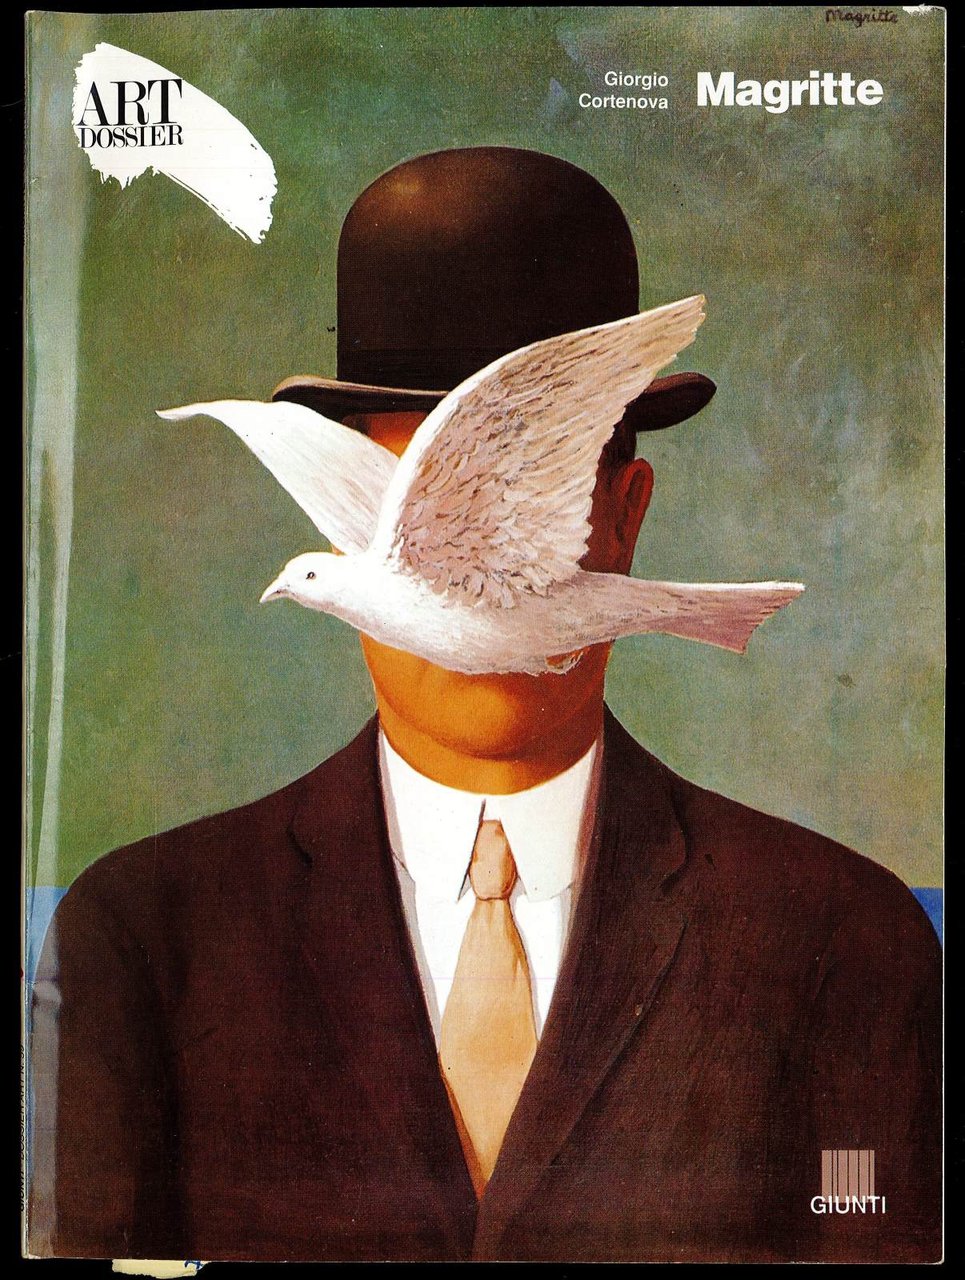 Art dossier Magritte